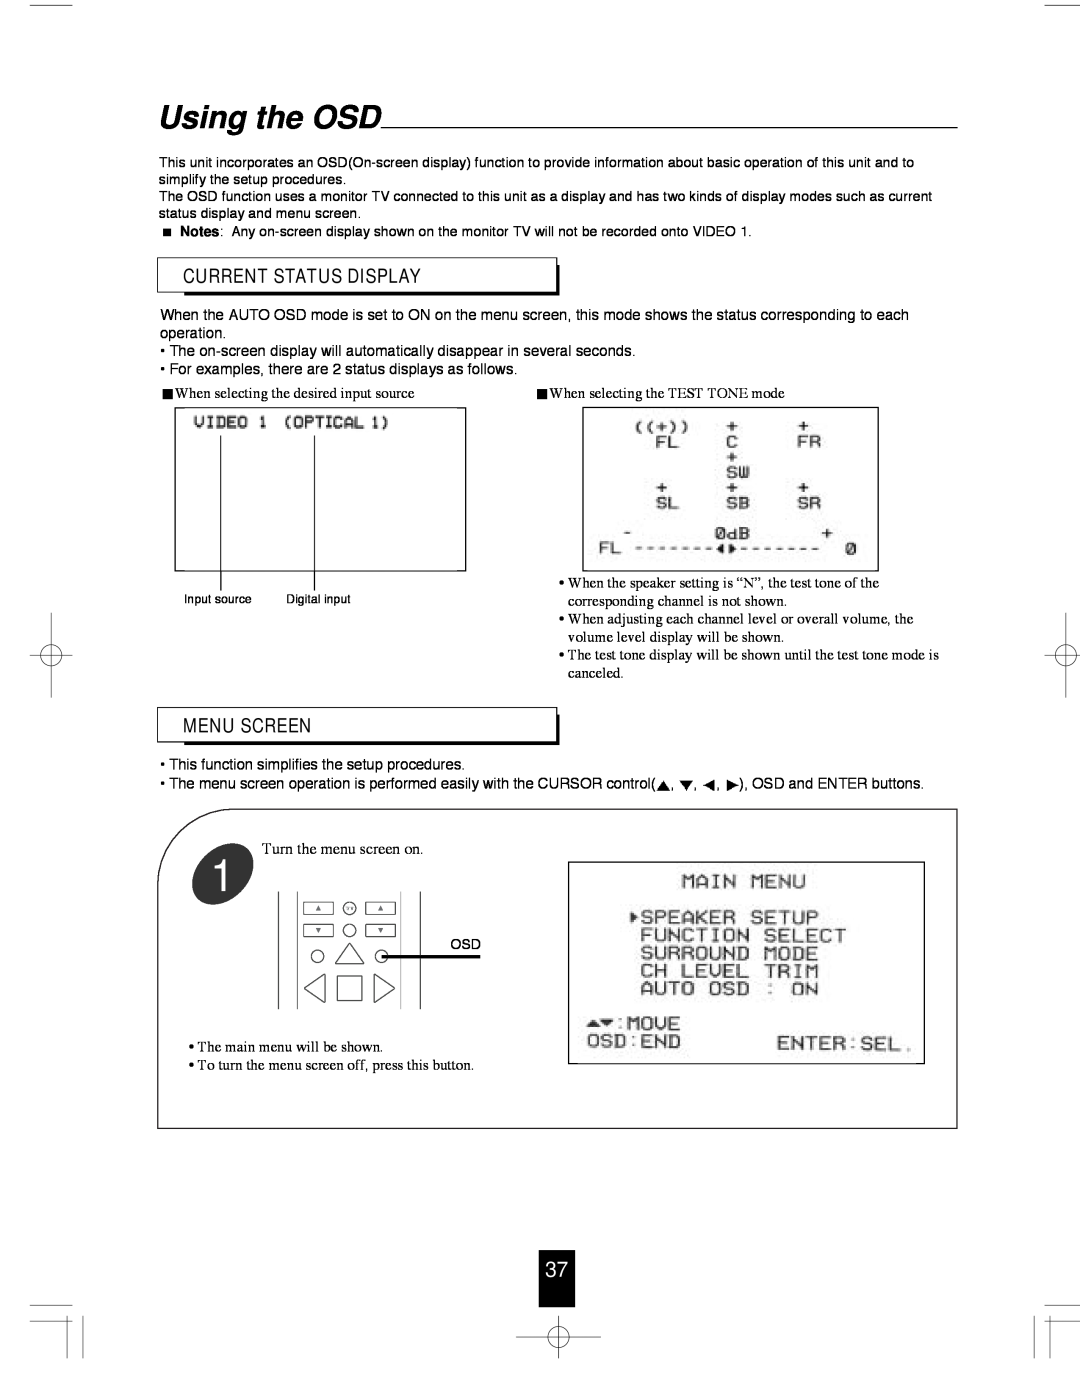 Sherwood R-765 manual Using the OSD, Current Status Display, Menu Screen 